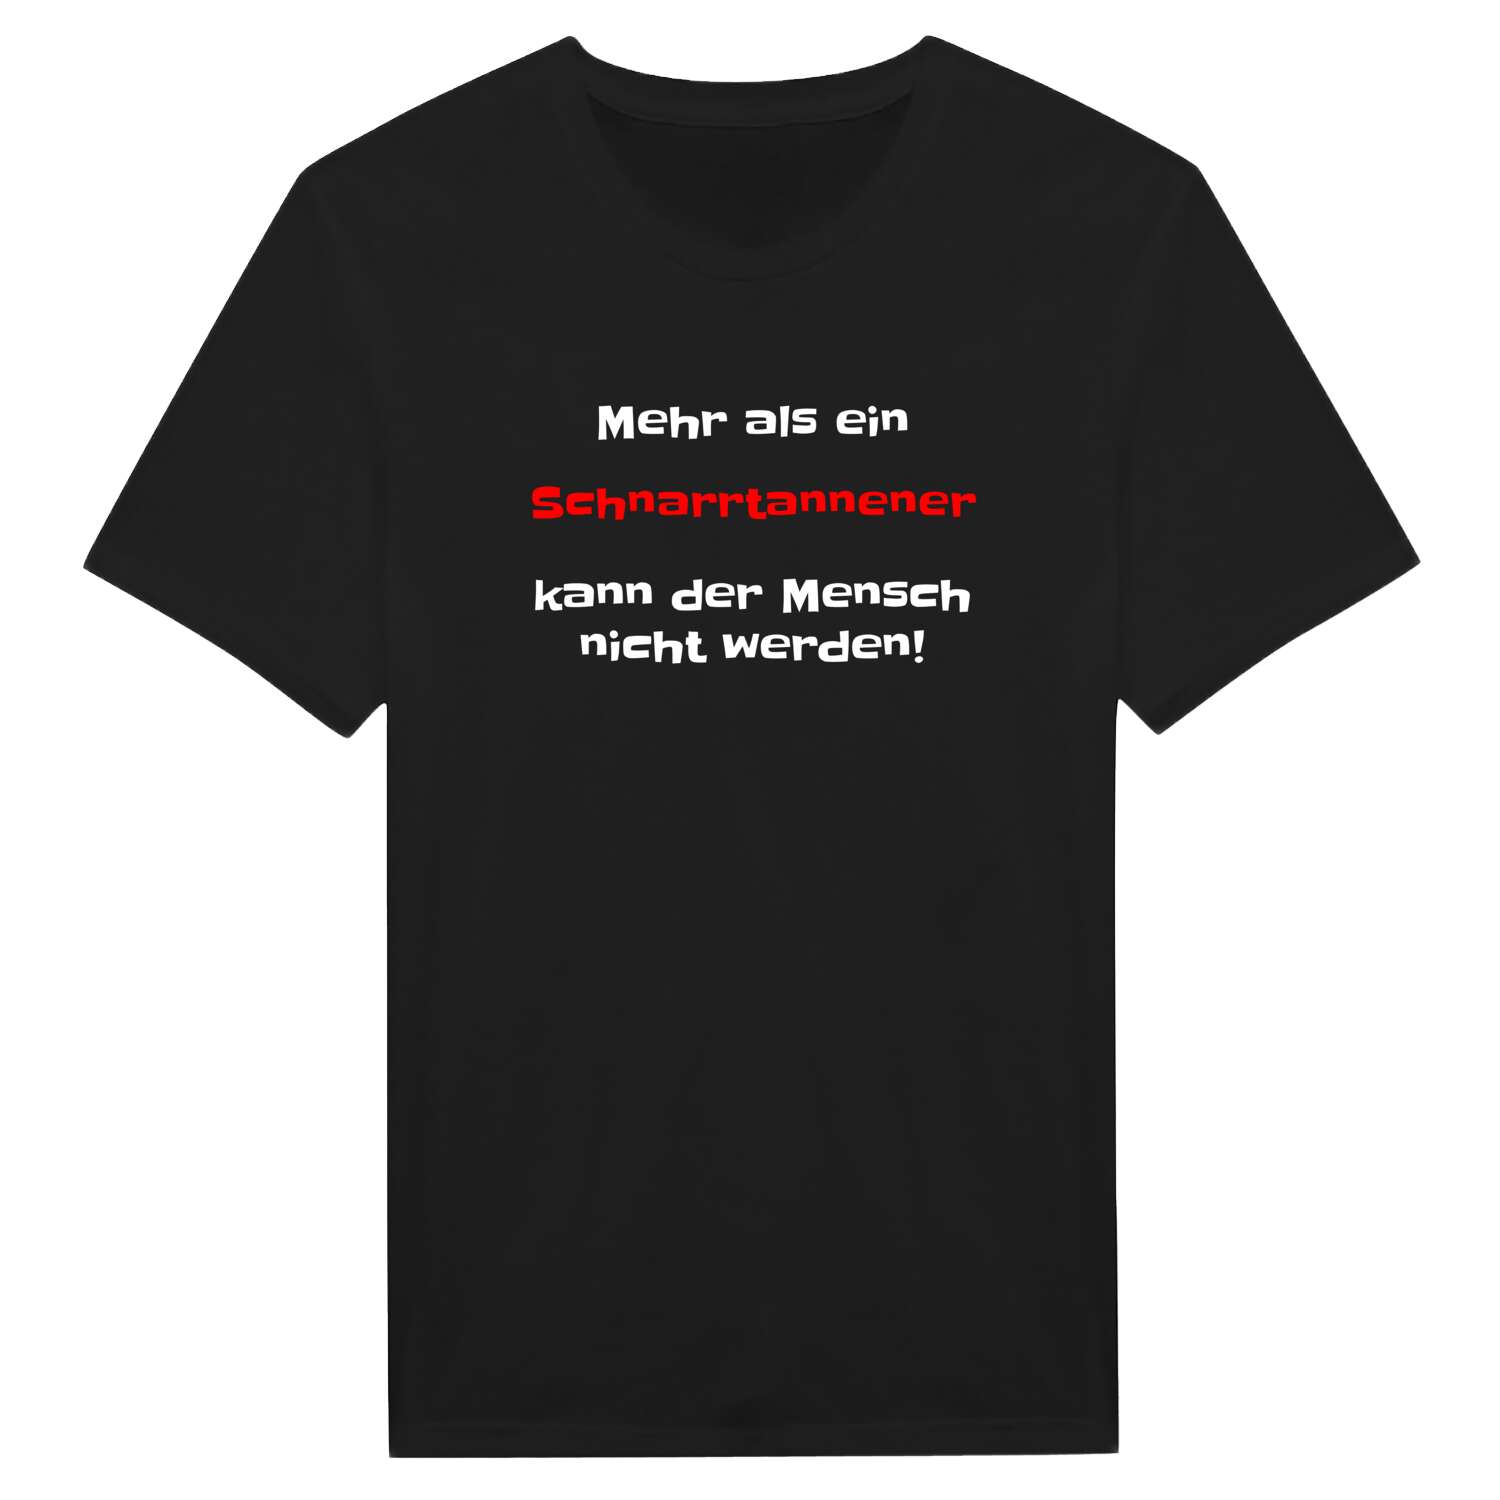 Schnarrtanne T-Shirt »Mehr als ein«